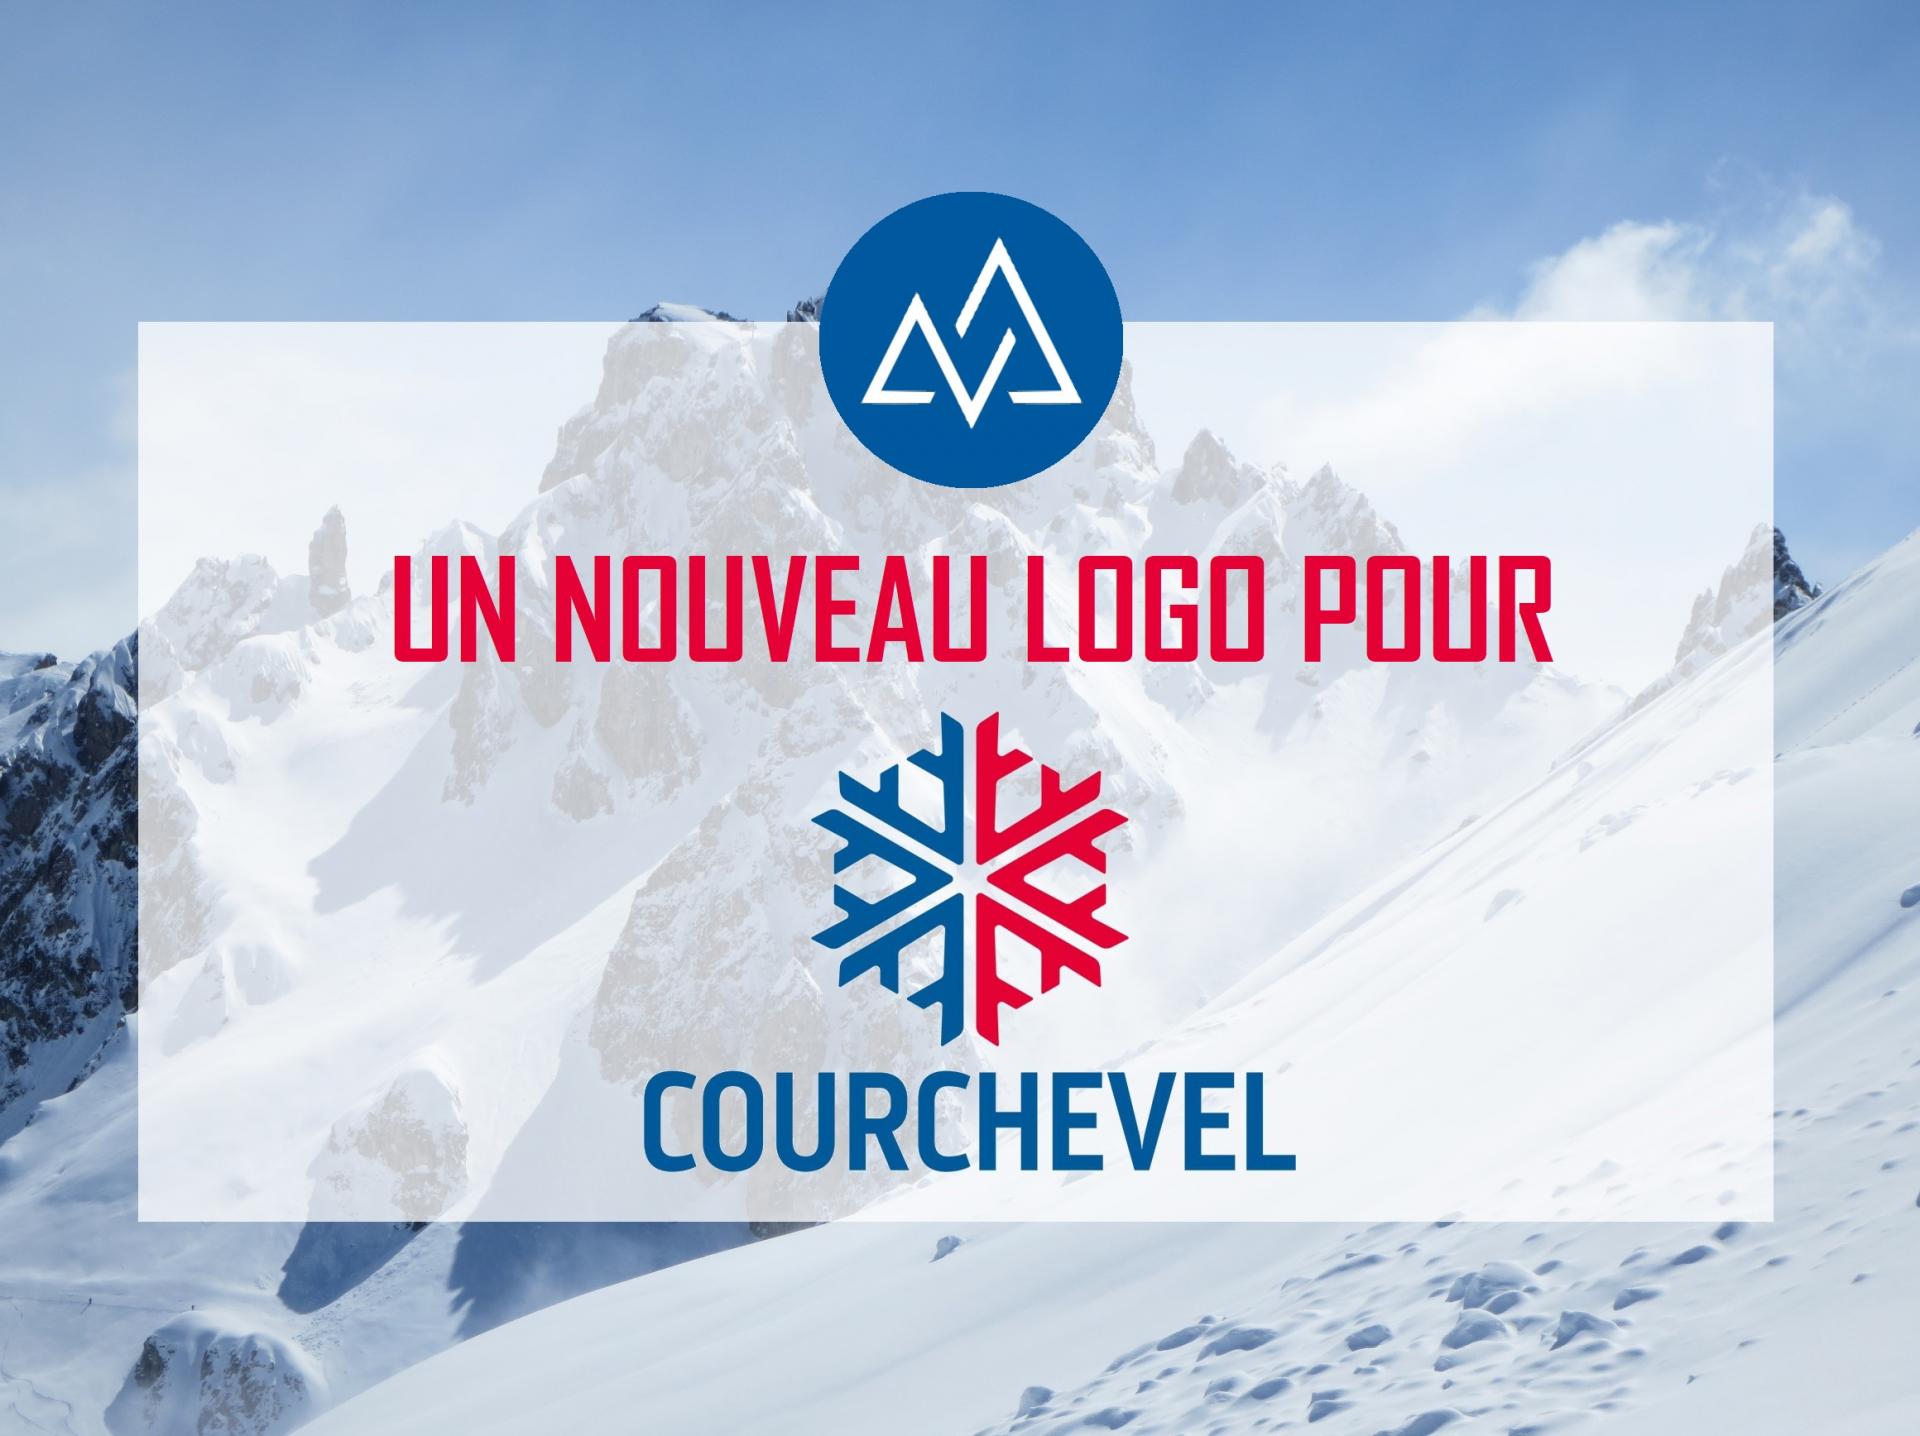 NEWS - Un nouveau logo pour Courchevel